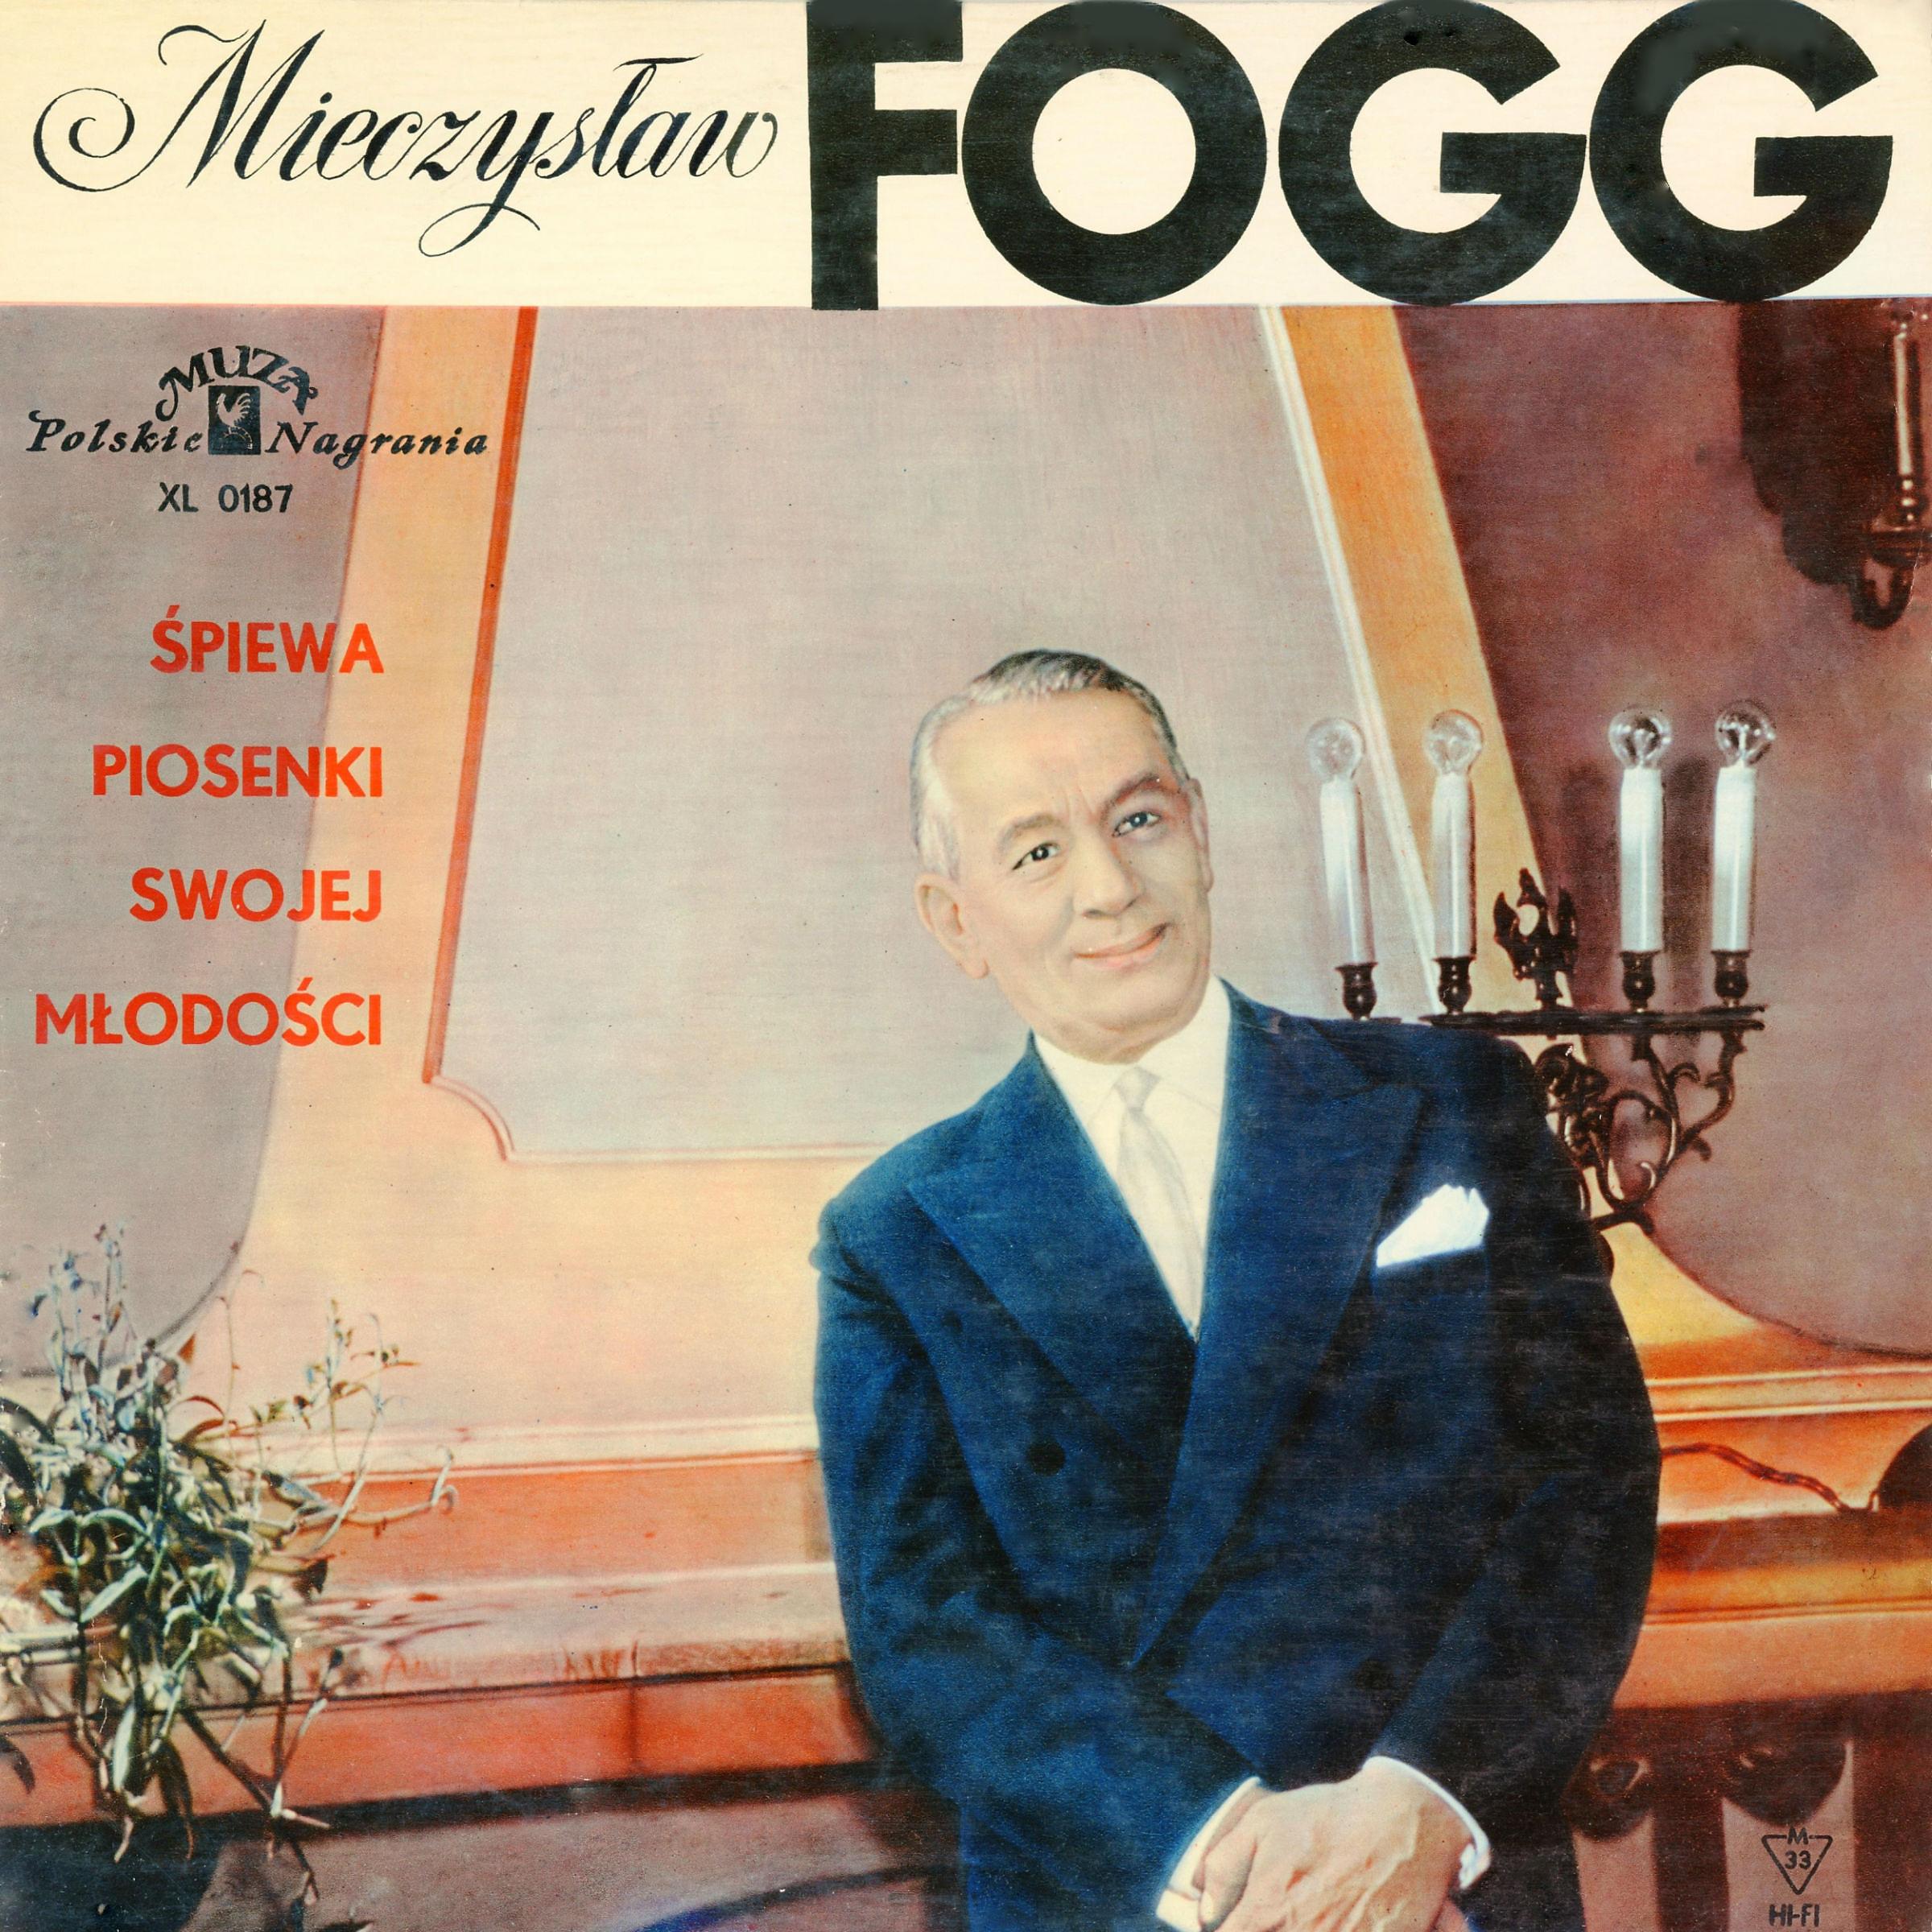 Постер альбома Mieczyslaw Fogg spiewa piosenki swojej mlodosci